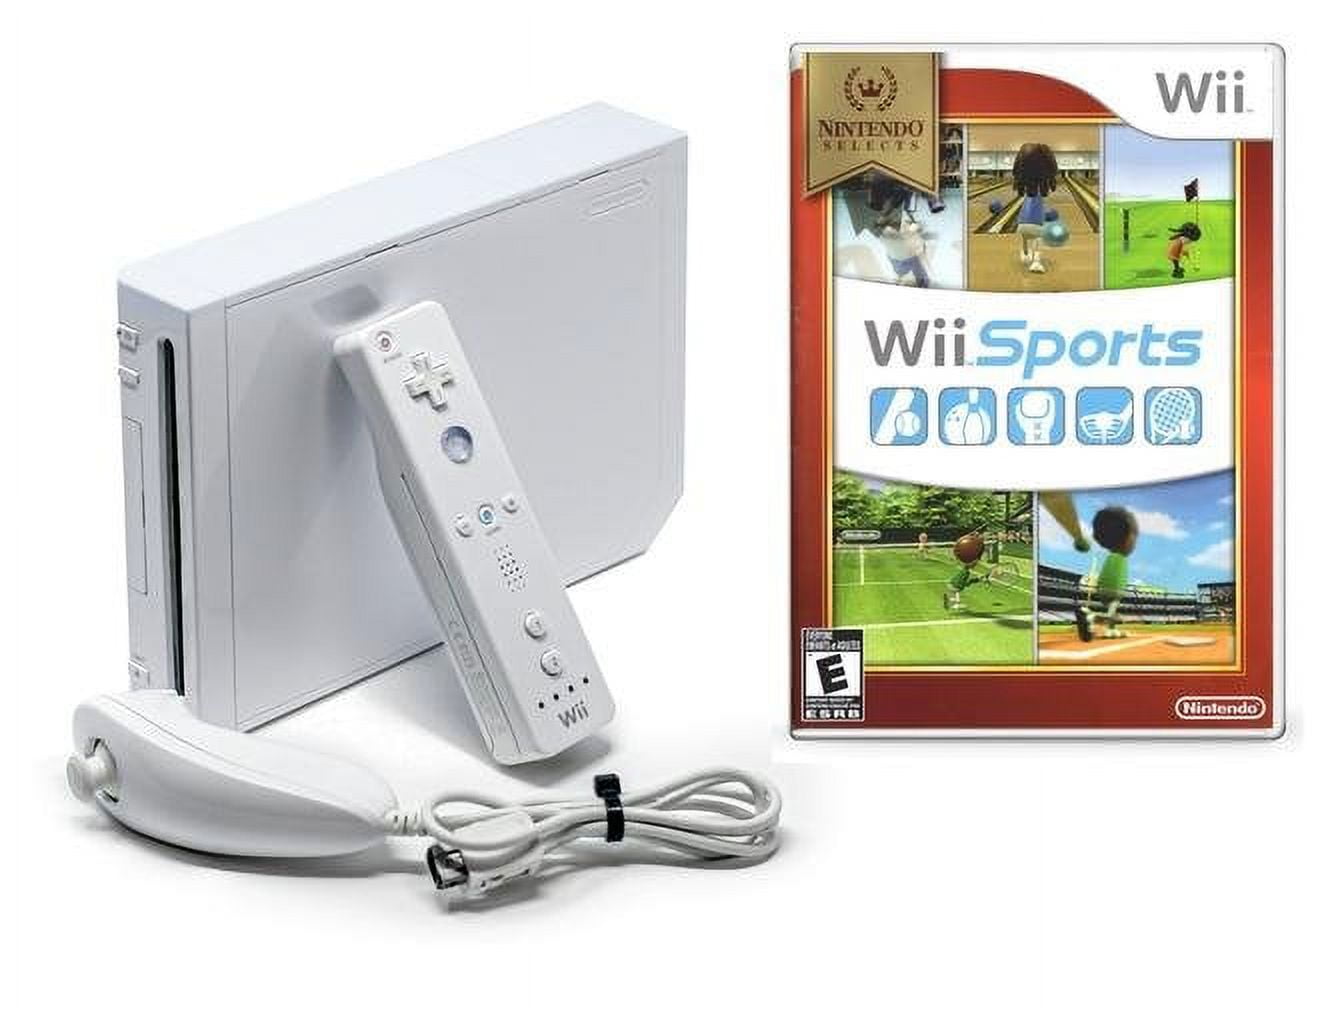 Wii Sports. Wii